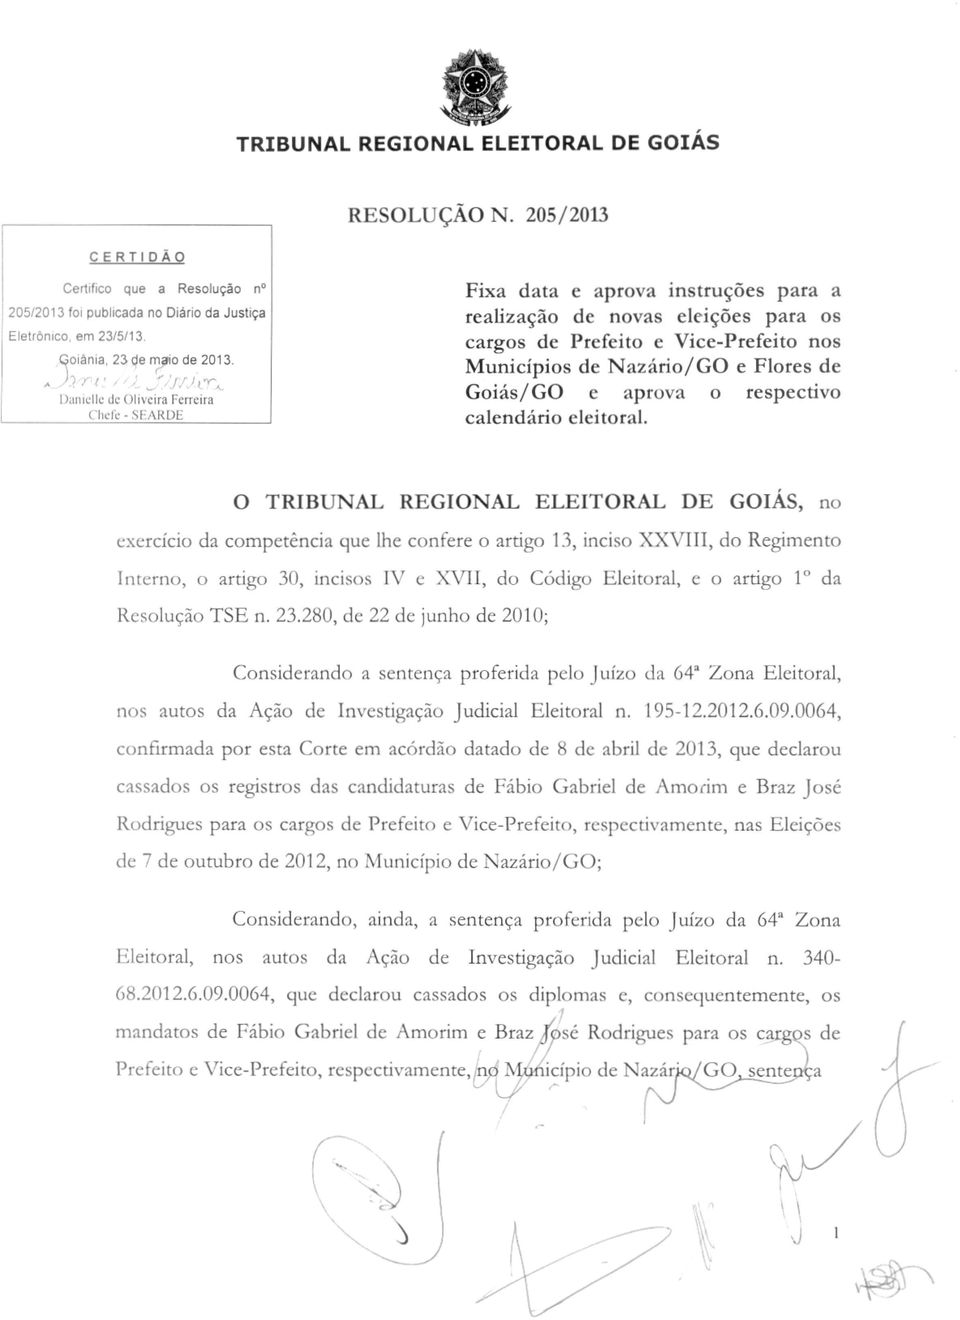 Goiás/GO e aprova o respectivo calendário eleitoral.